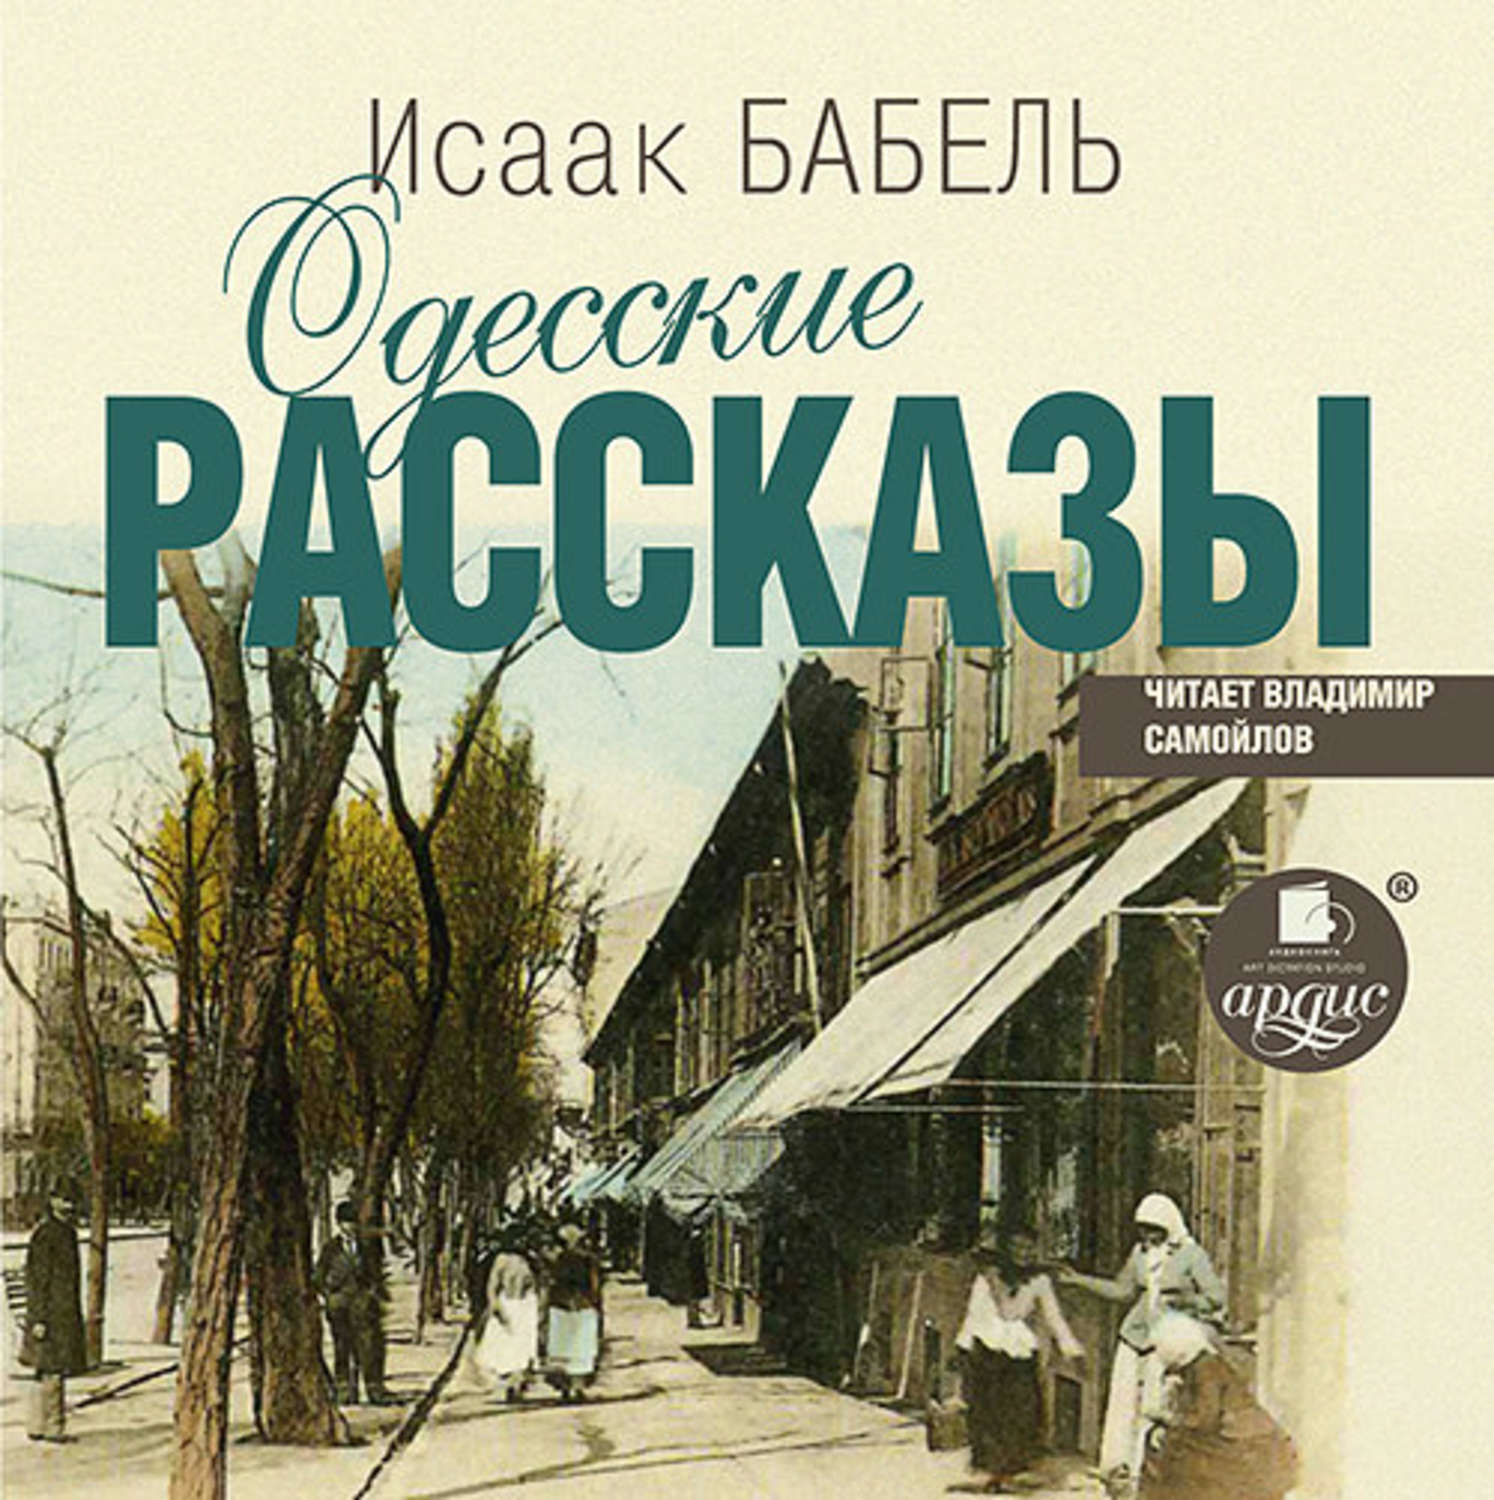 Слушать бабеля одесские. Бабель одесские рассказы книга. Бабель одесские рассказы картинки.